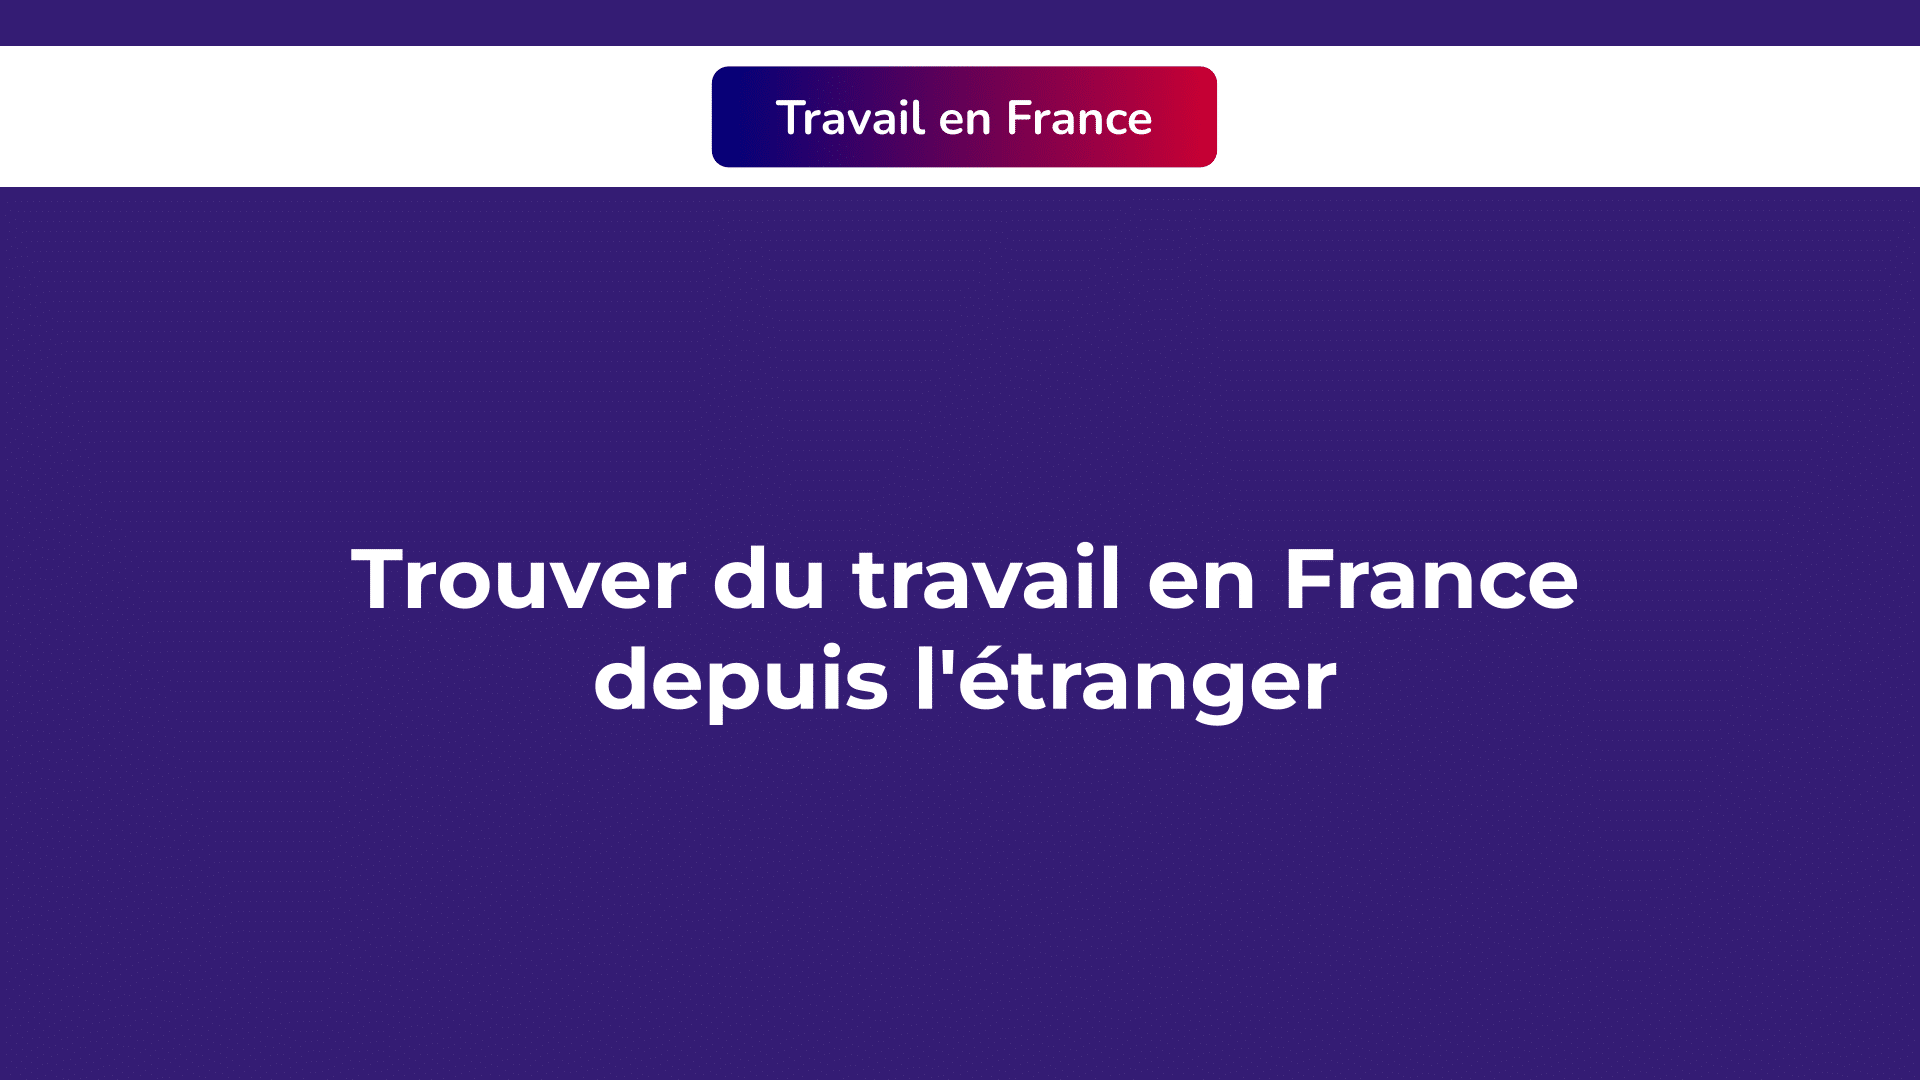 Trouver du travail en France depuis l'étranger